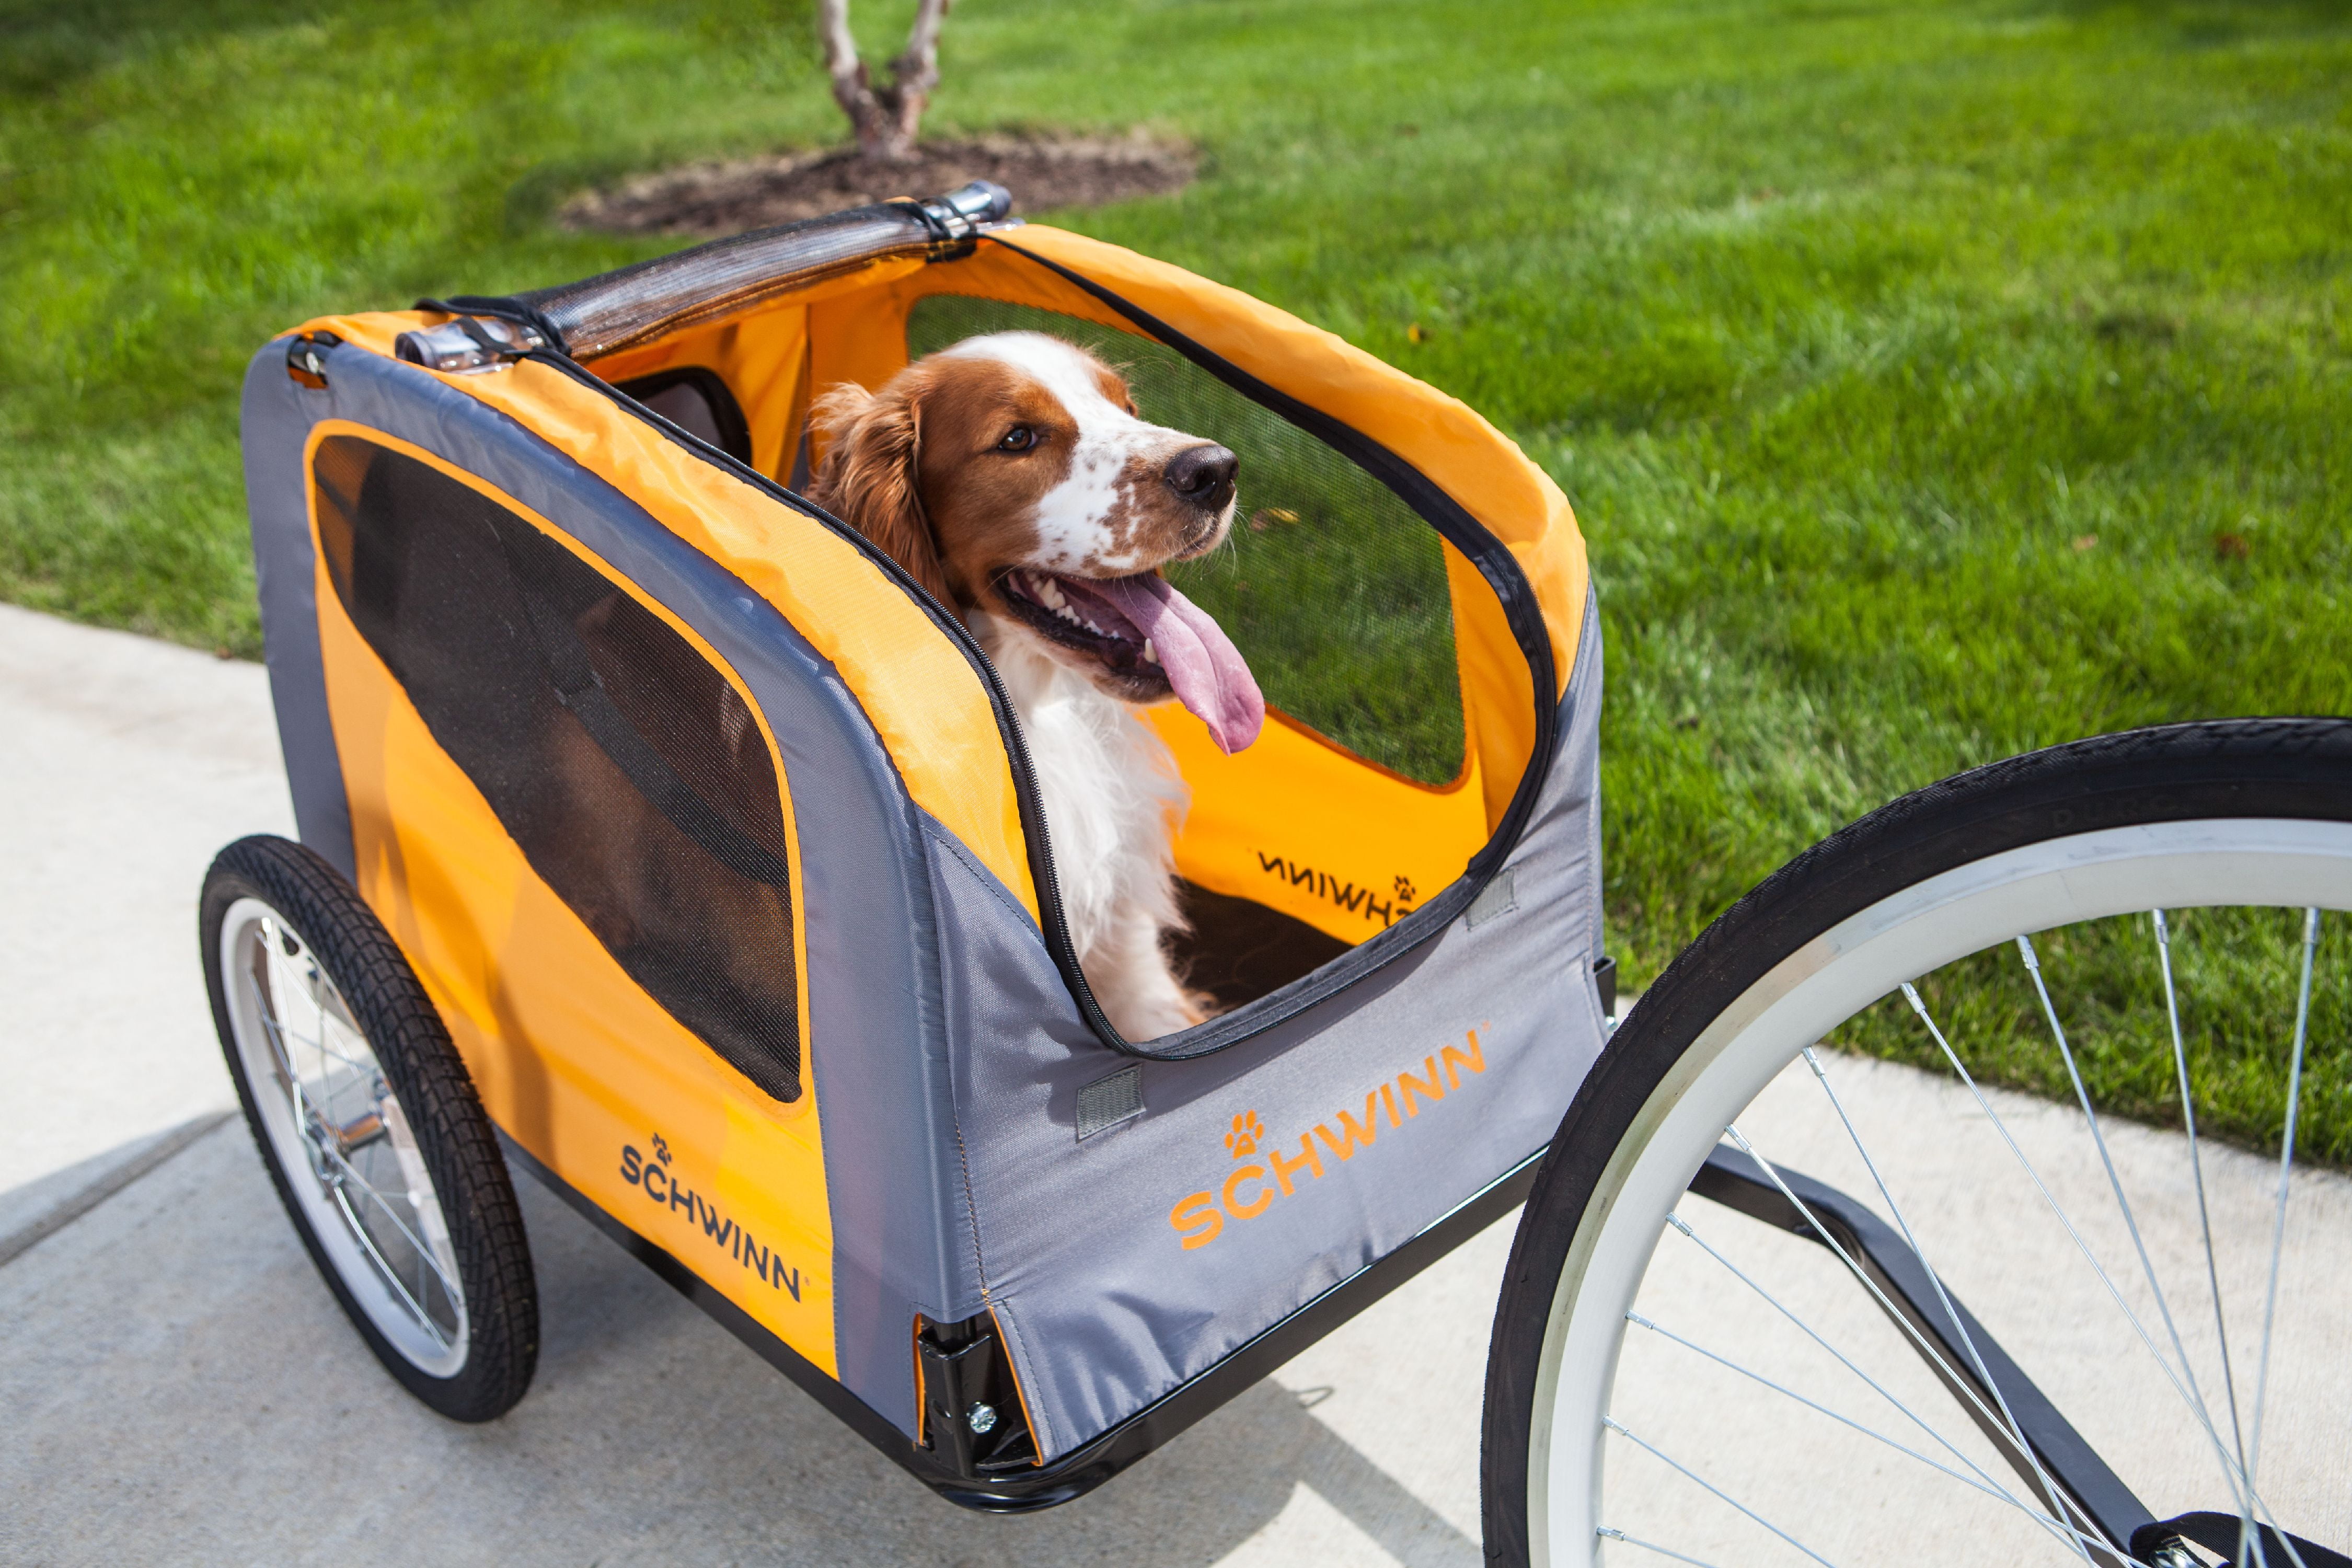 bike stroller for dogs